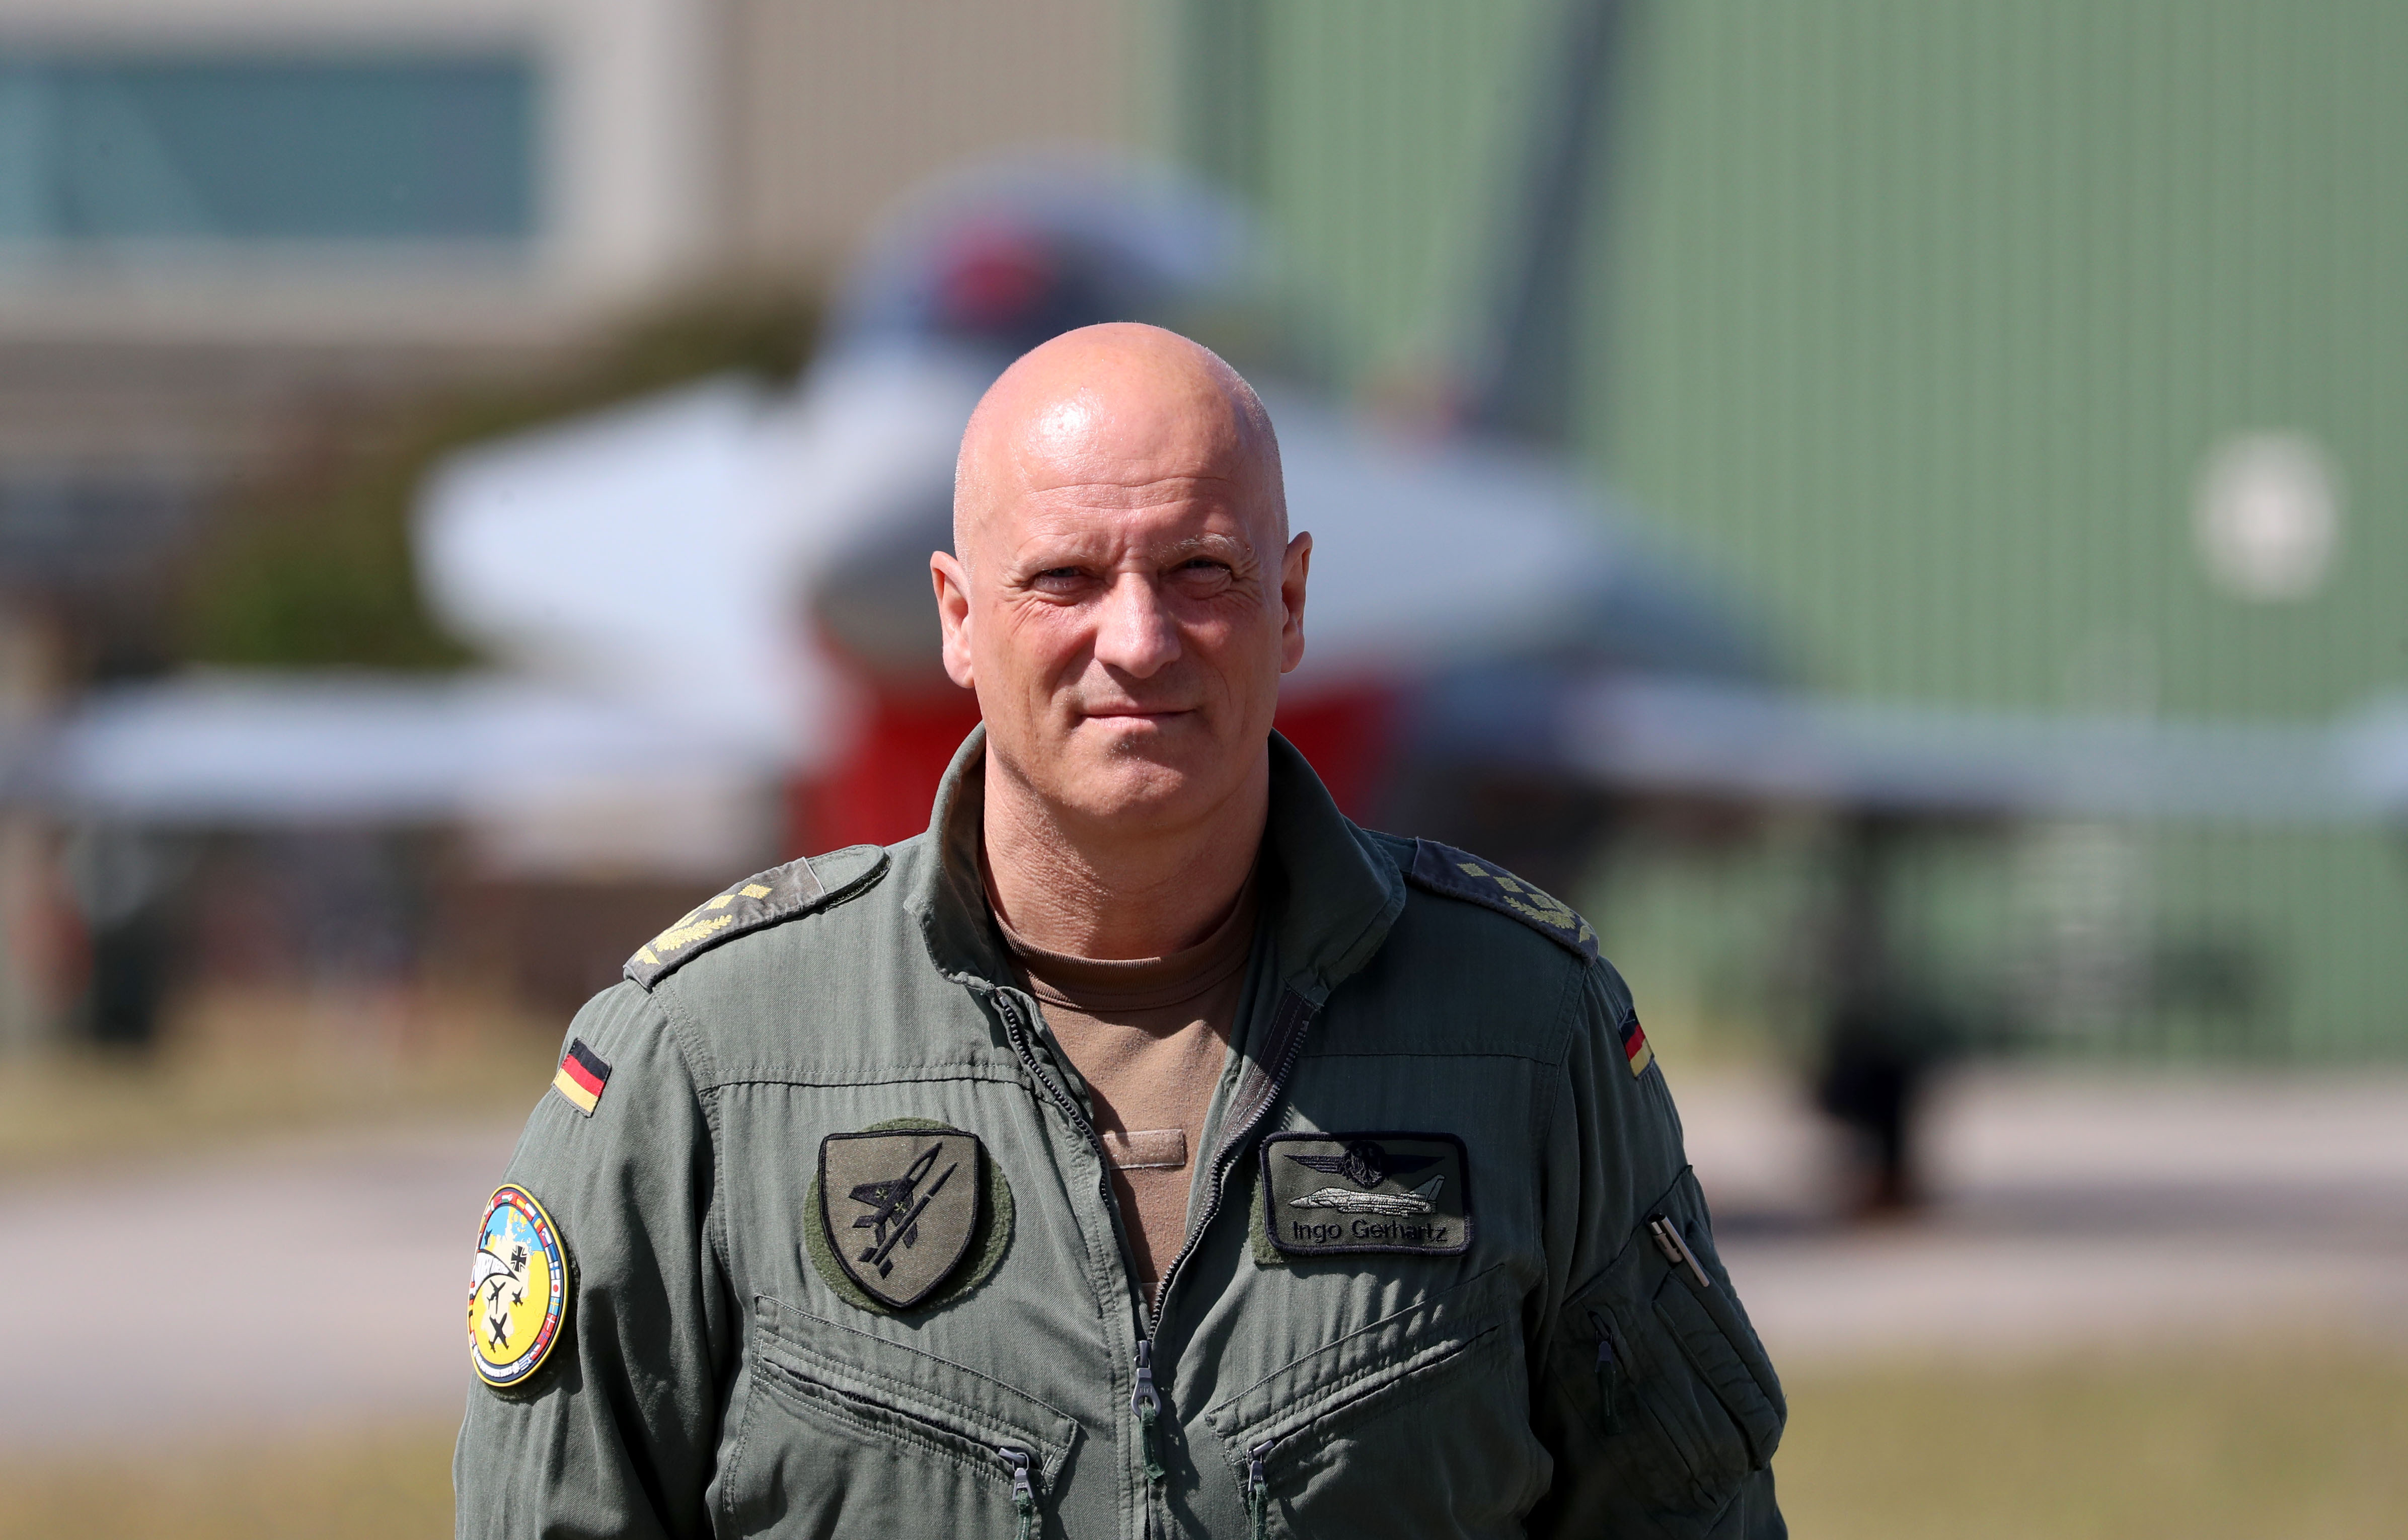 Der Chef der Luftwaffe, Ingo Gerhartz, wurde aufsehenerregend aufgezeichnet, als er darüber sprach, wie britische Truppen in der Ukraine „am Boden“ seien